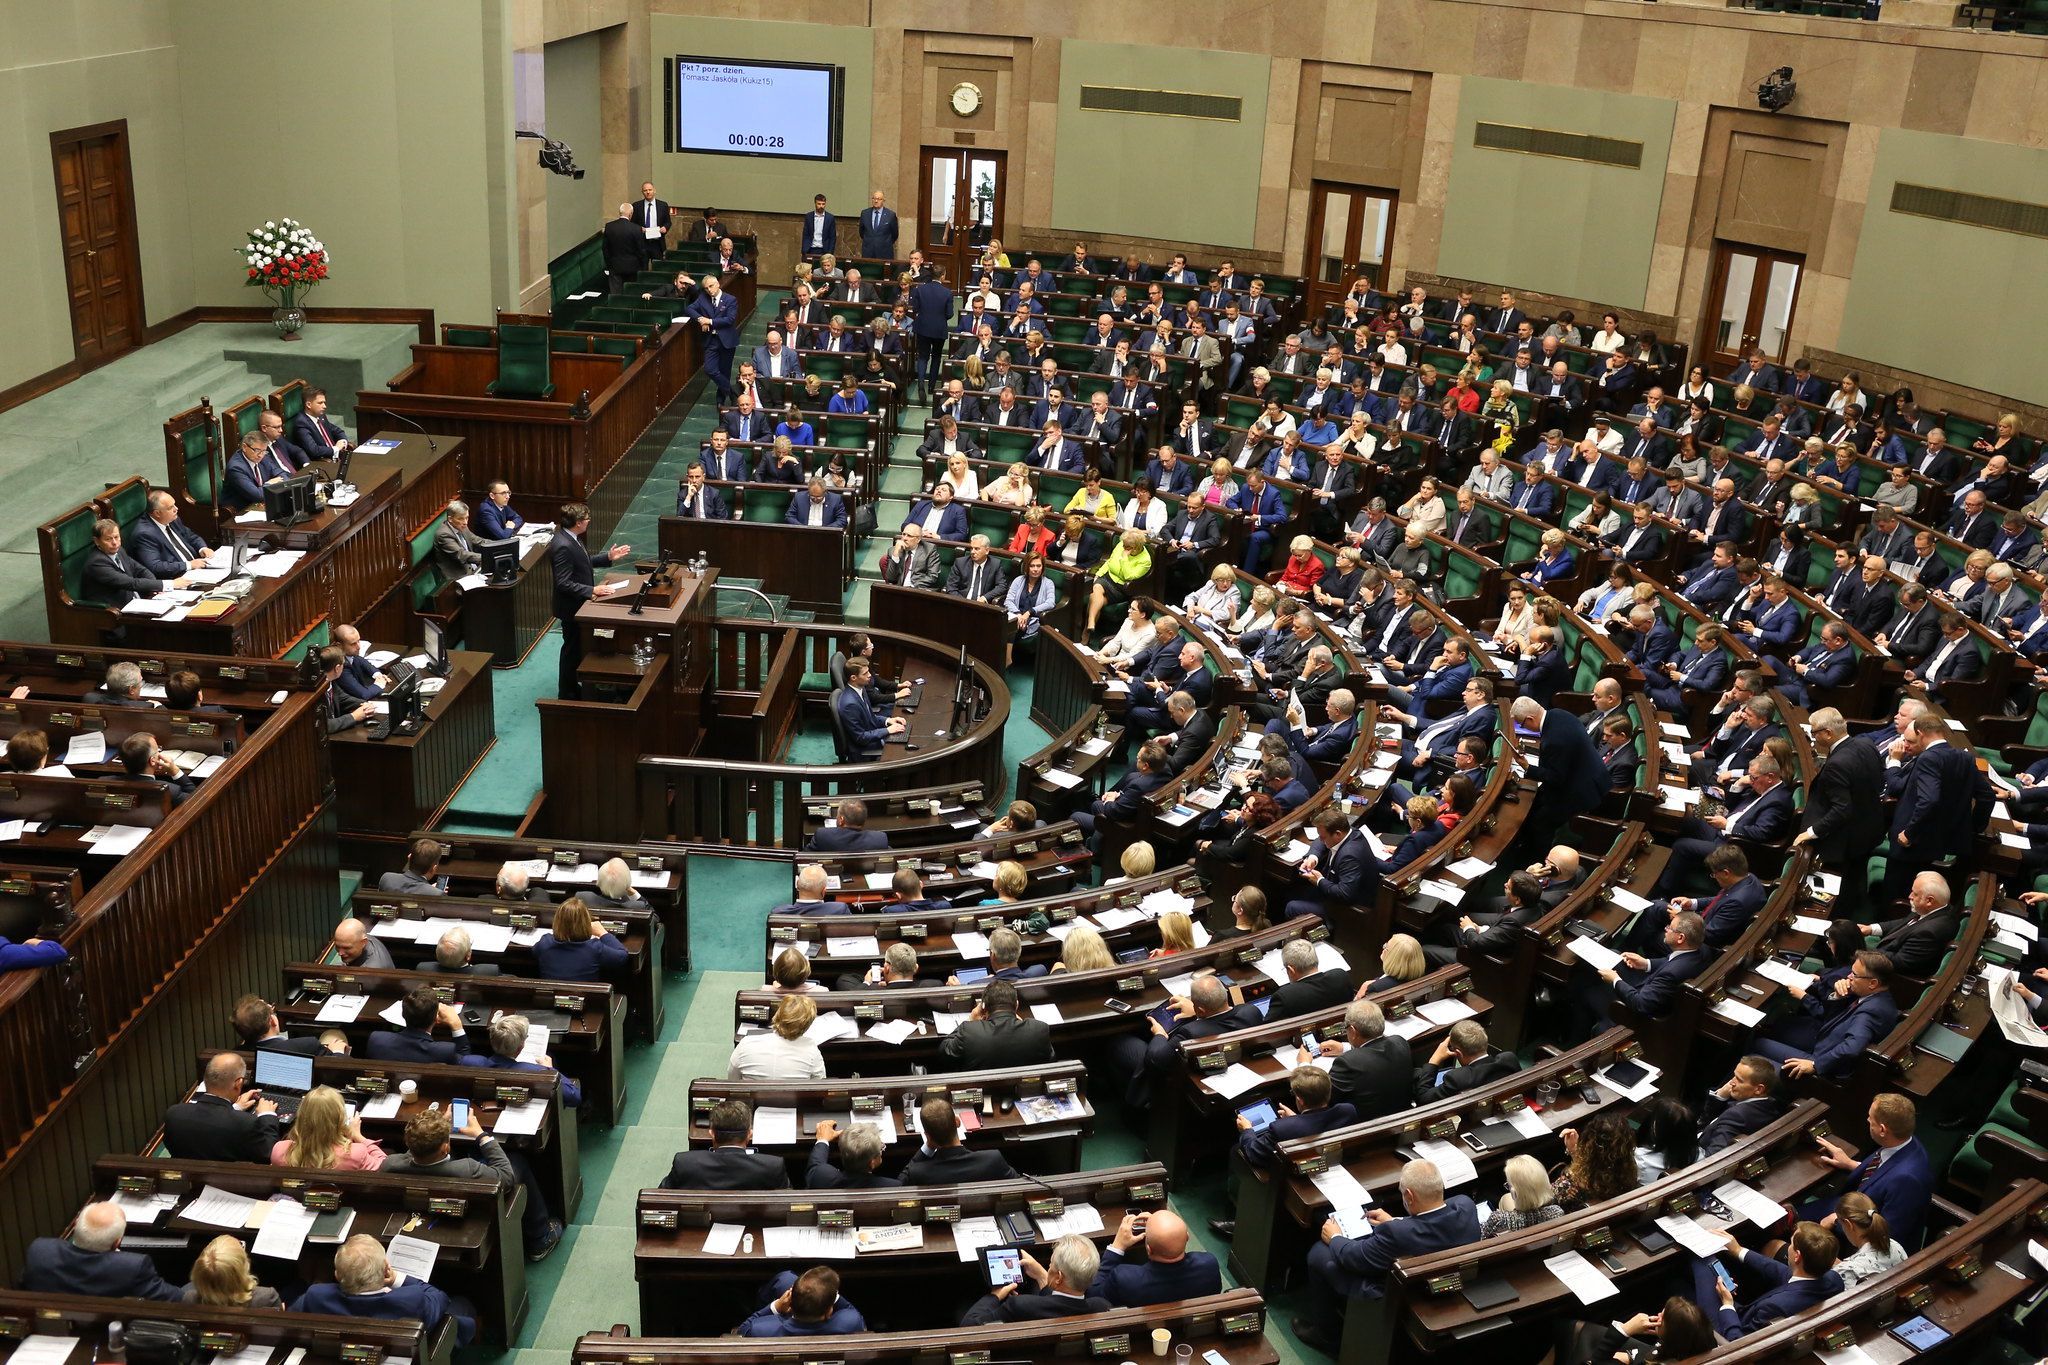 Fot. Kancelaria Sejmu/Krzysztof Białoskórski, CC BY 2.0